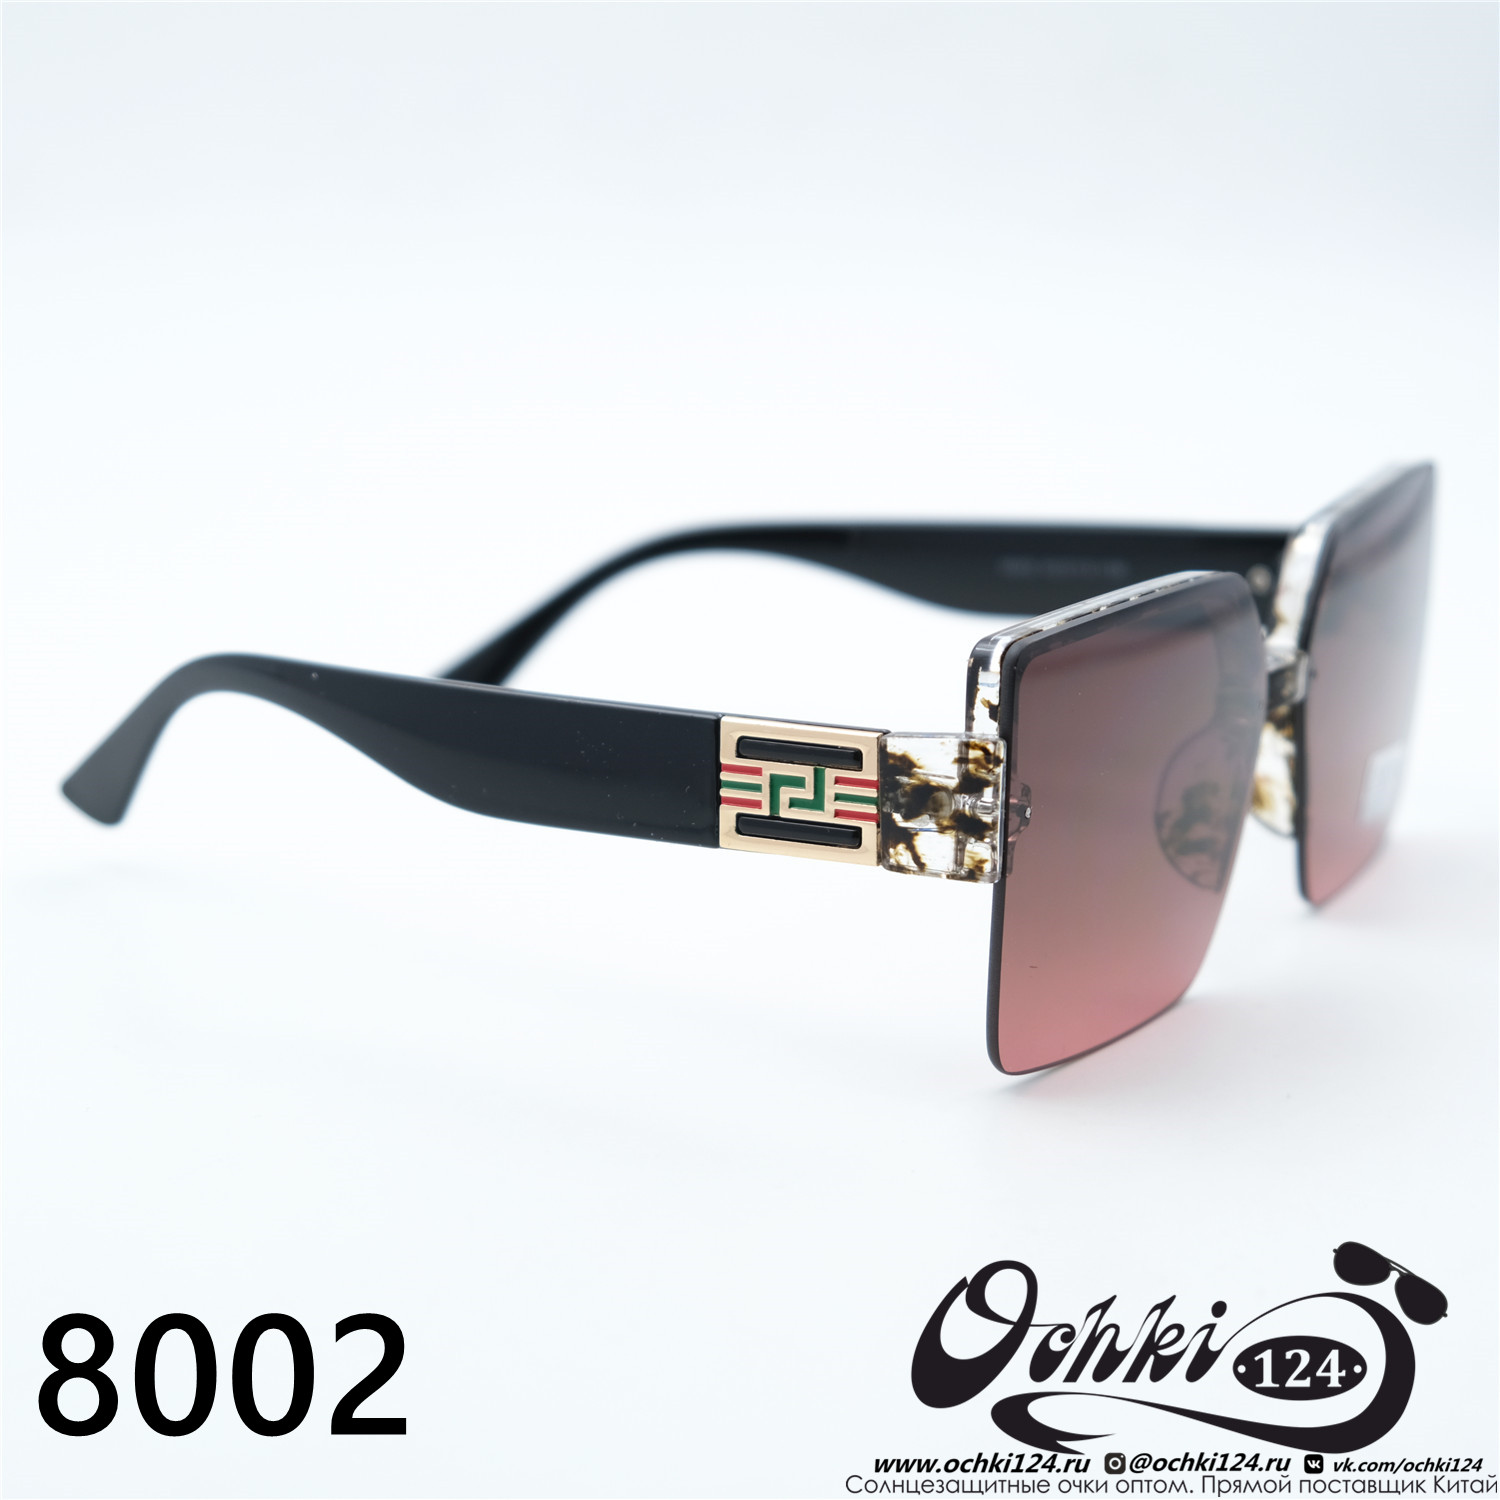  Солнцезащитные очки картинка 2023 Женские Квадратные Caipai 8002-C3 